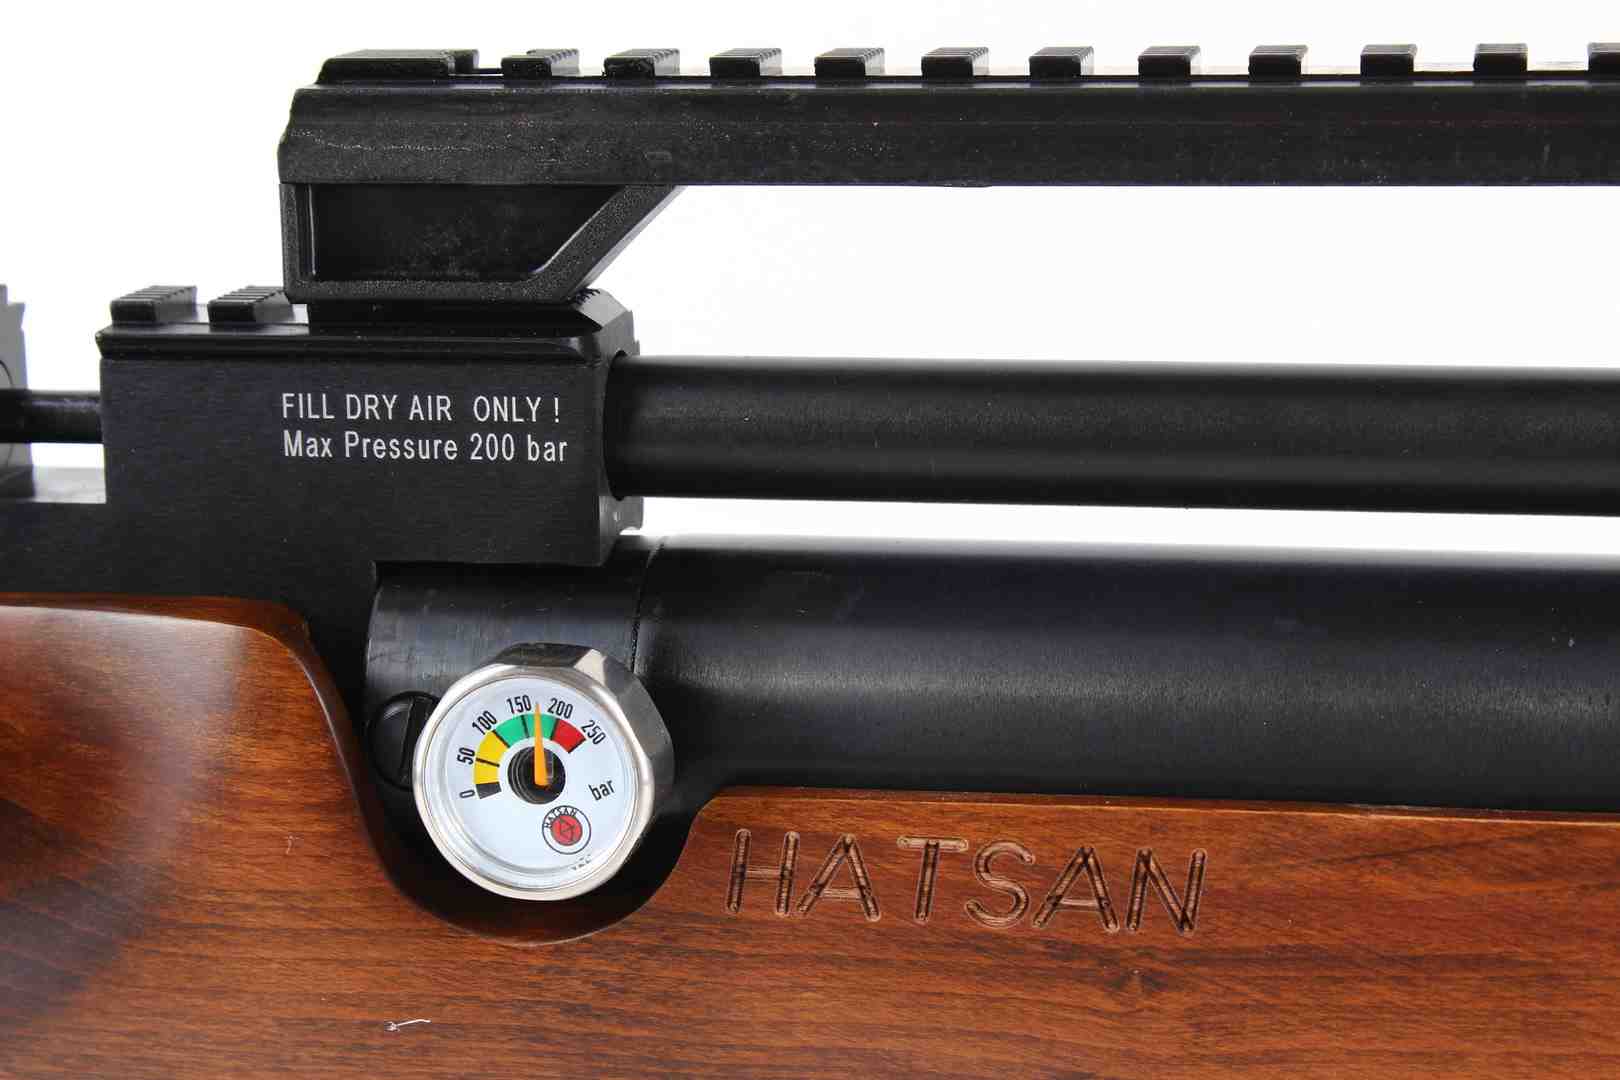 Пневматическая винтовка Hatsan Flashpup-W (дерево, PCP, 3 Дж) 6,35 мм